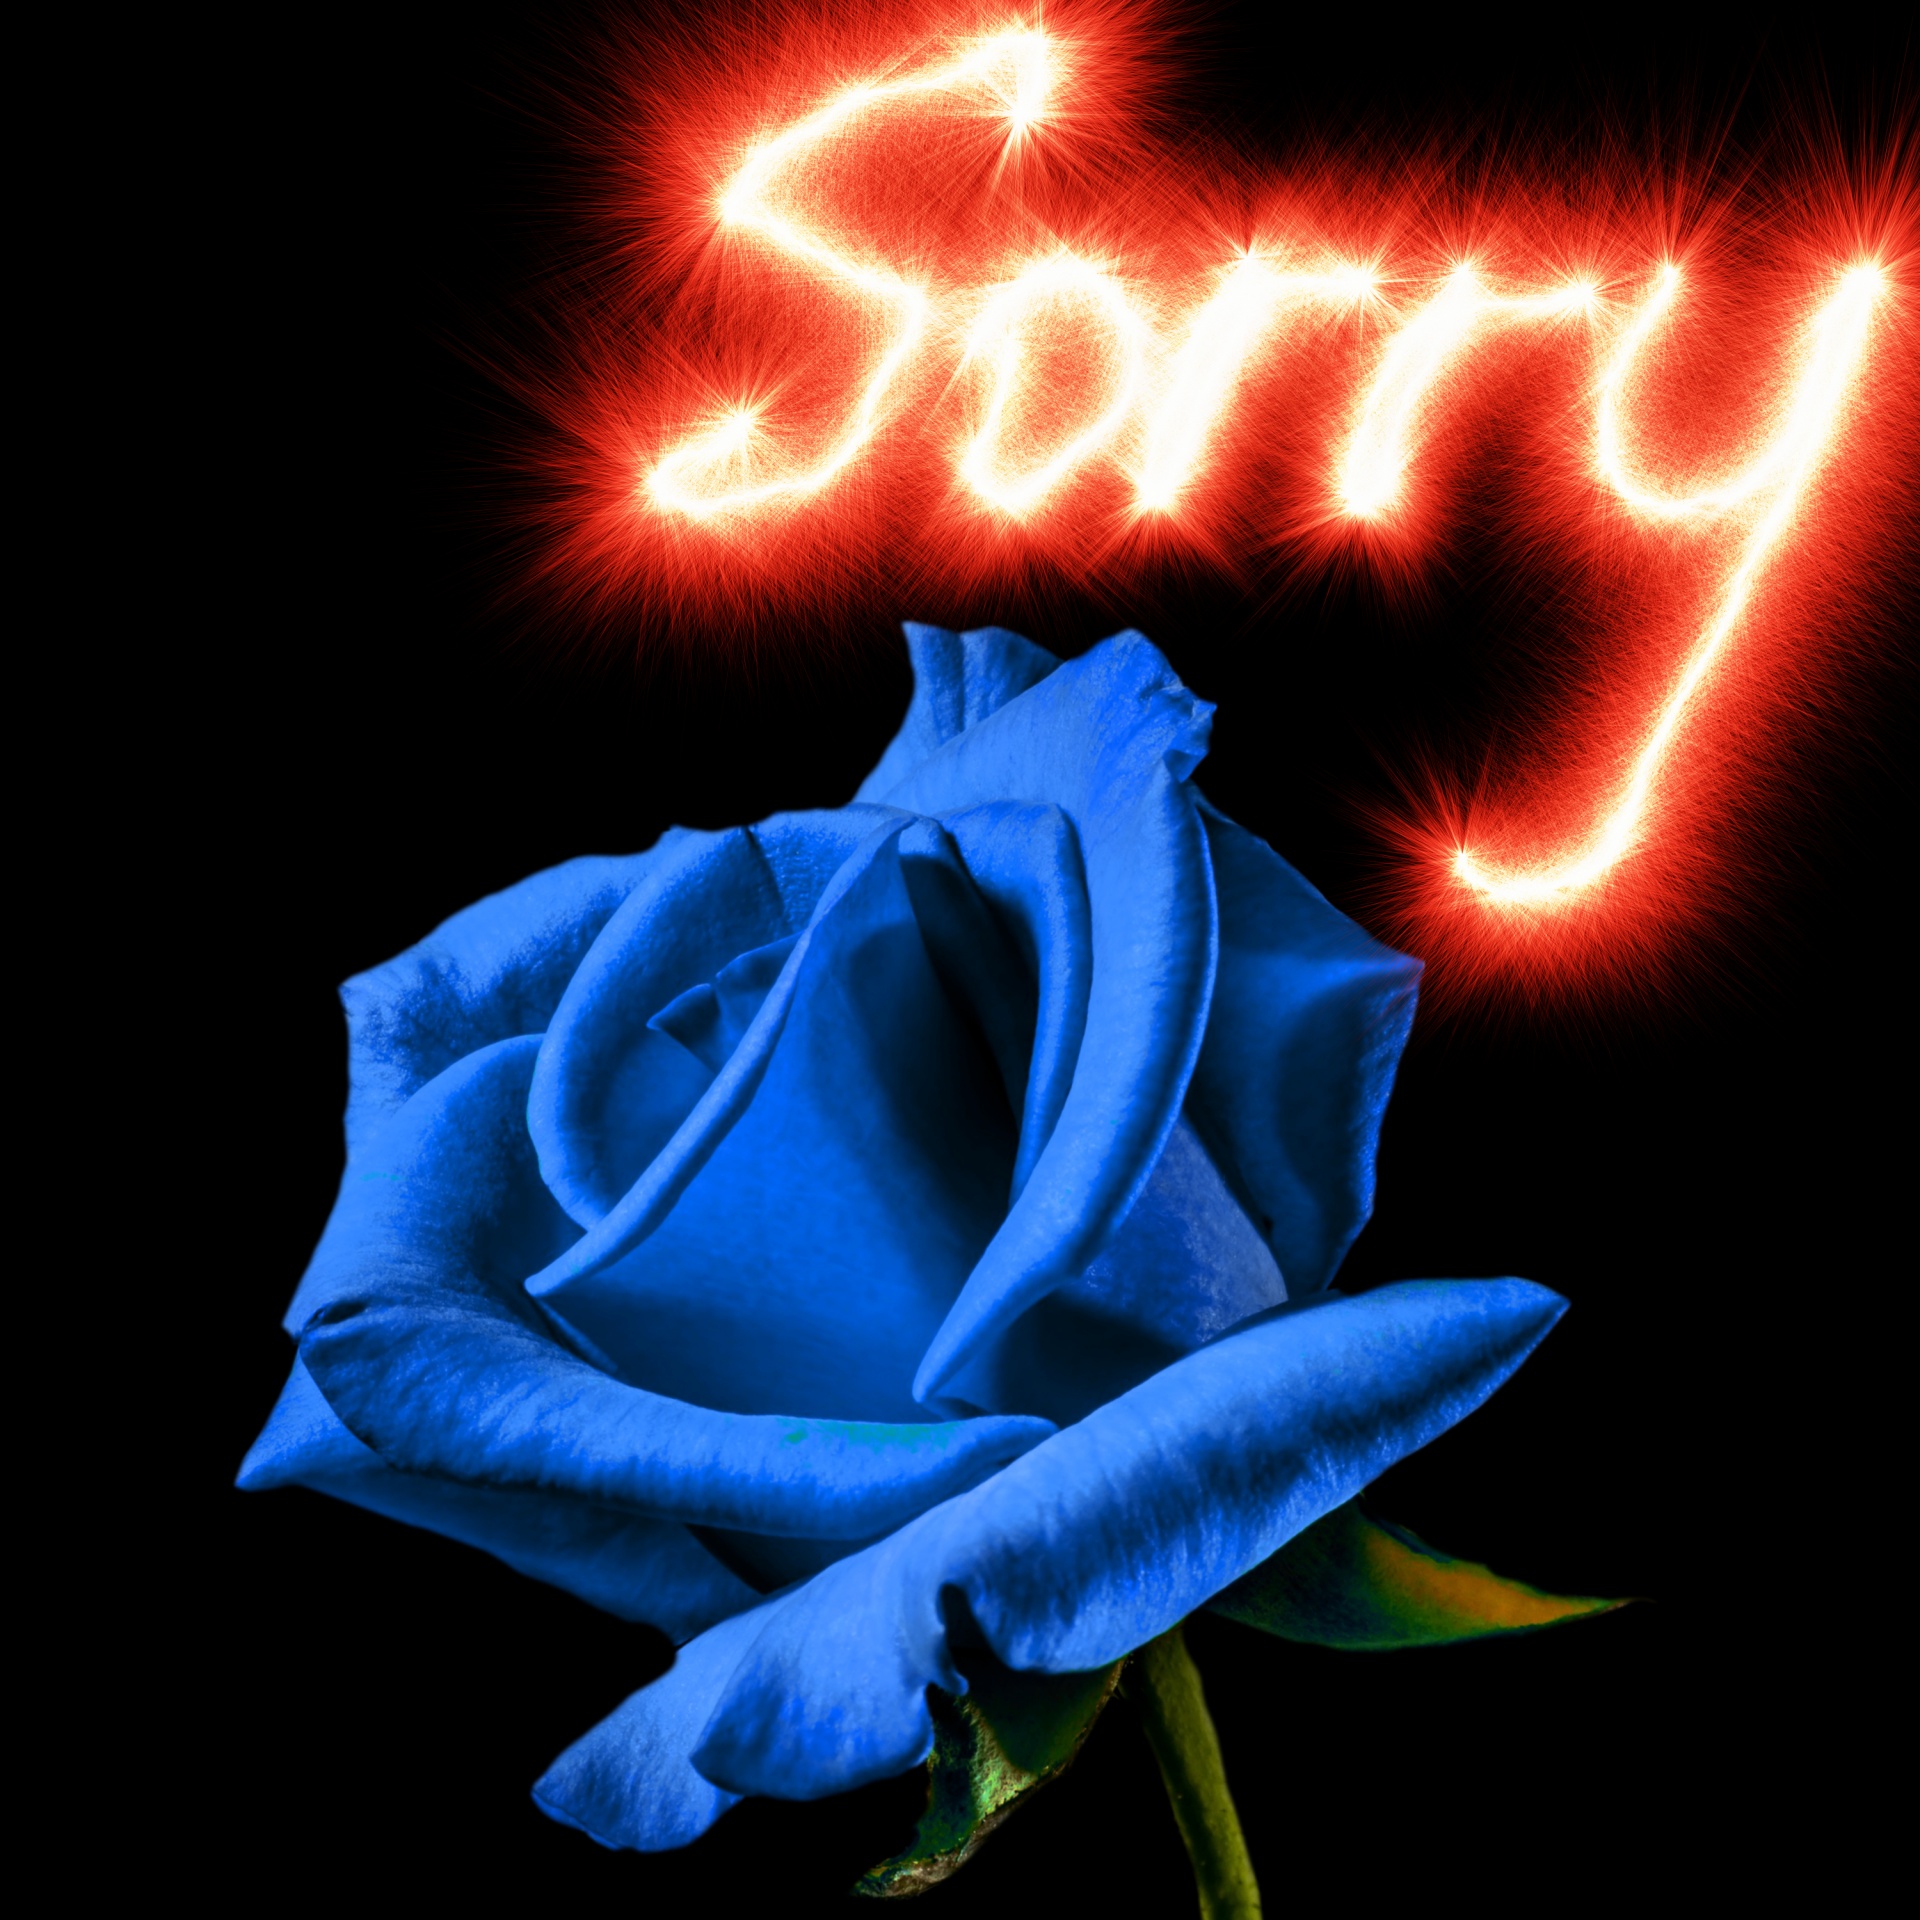 rose background apology free photo